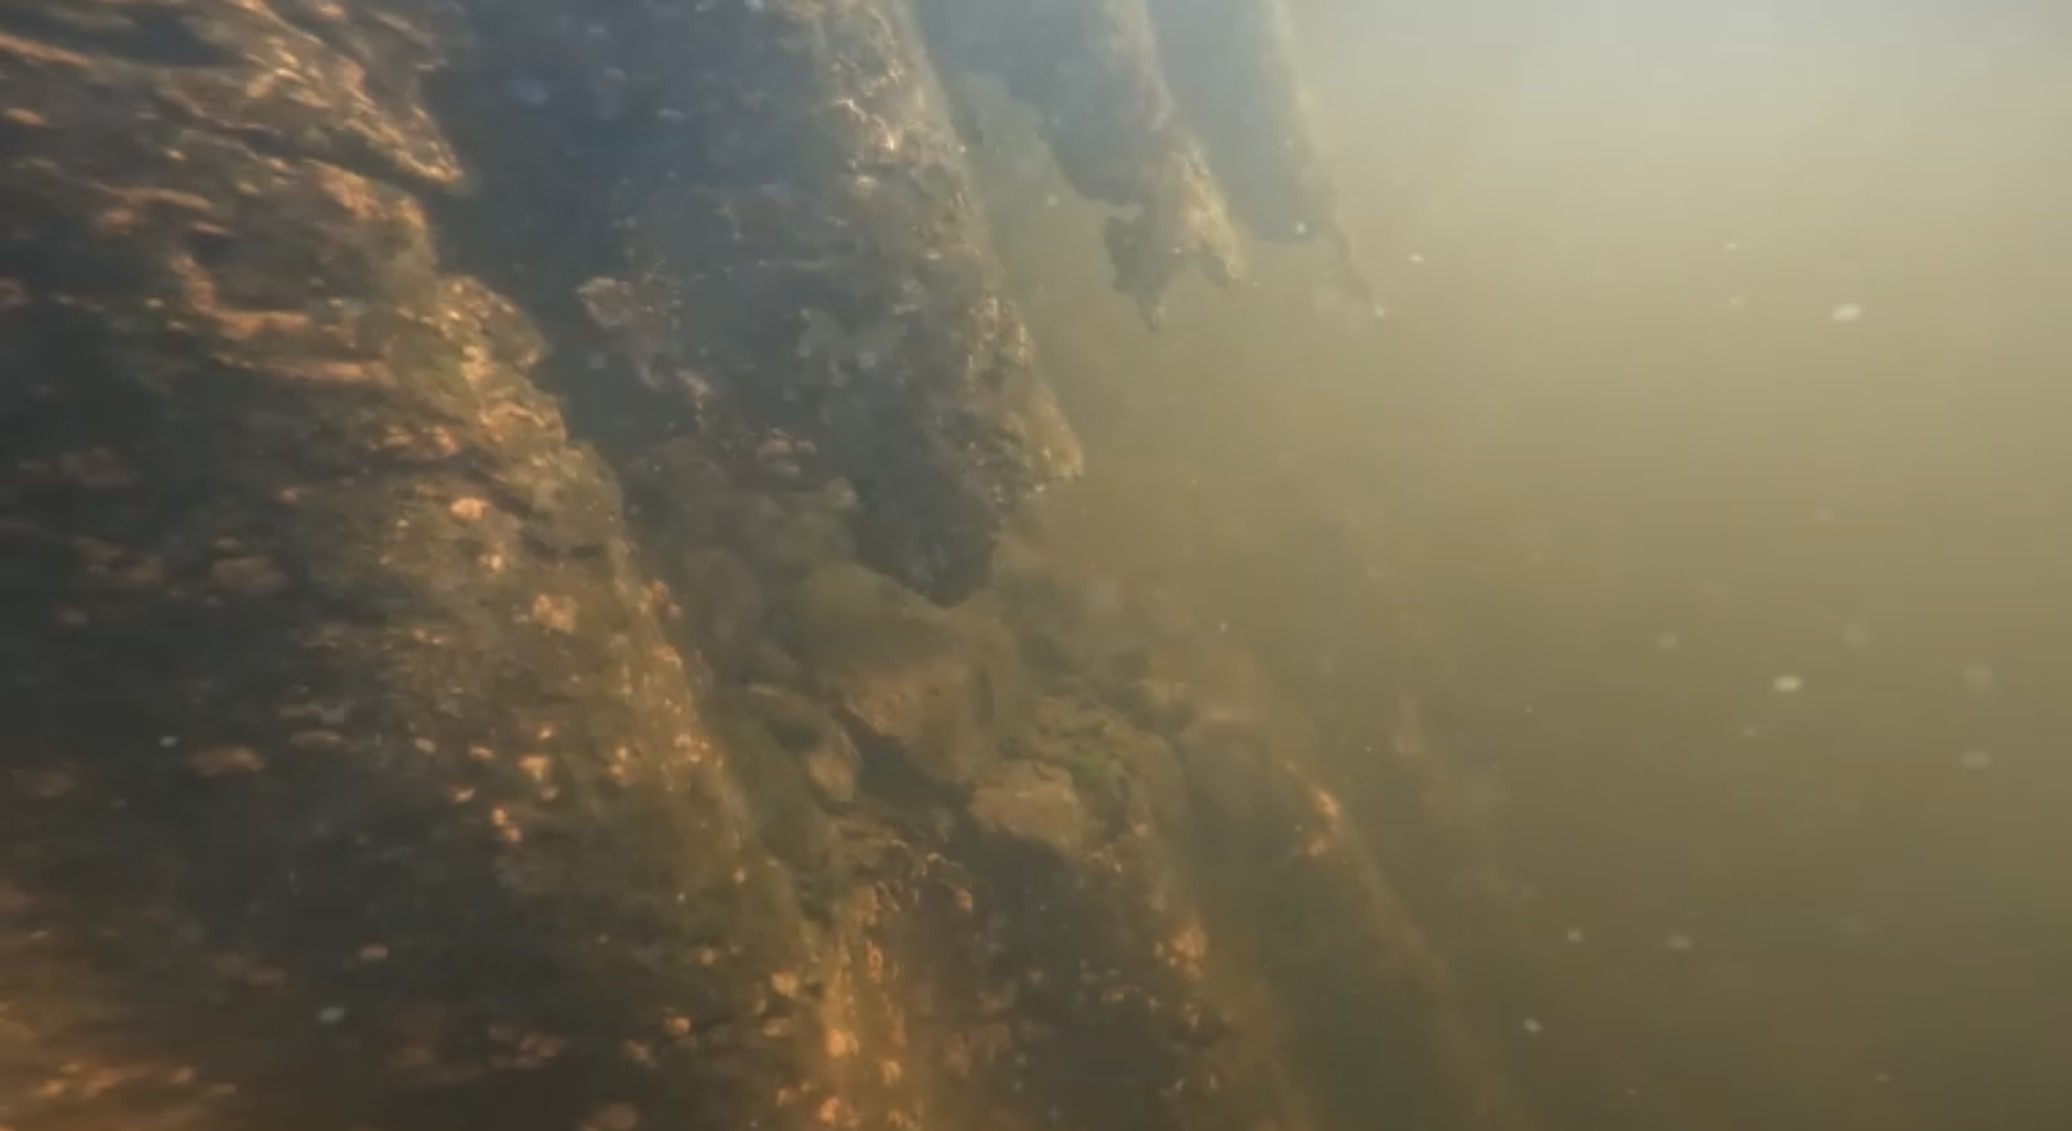 korroosion muodostama reikä putkisillassa veden alla.